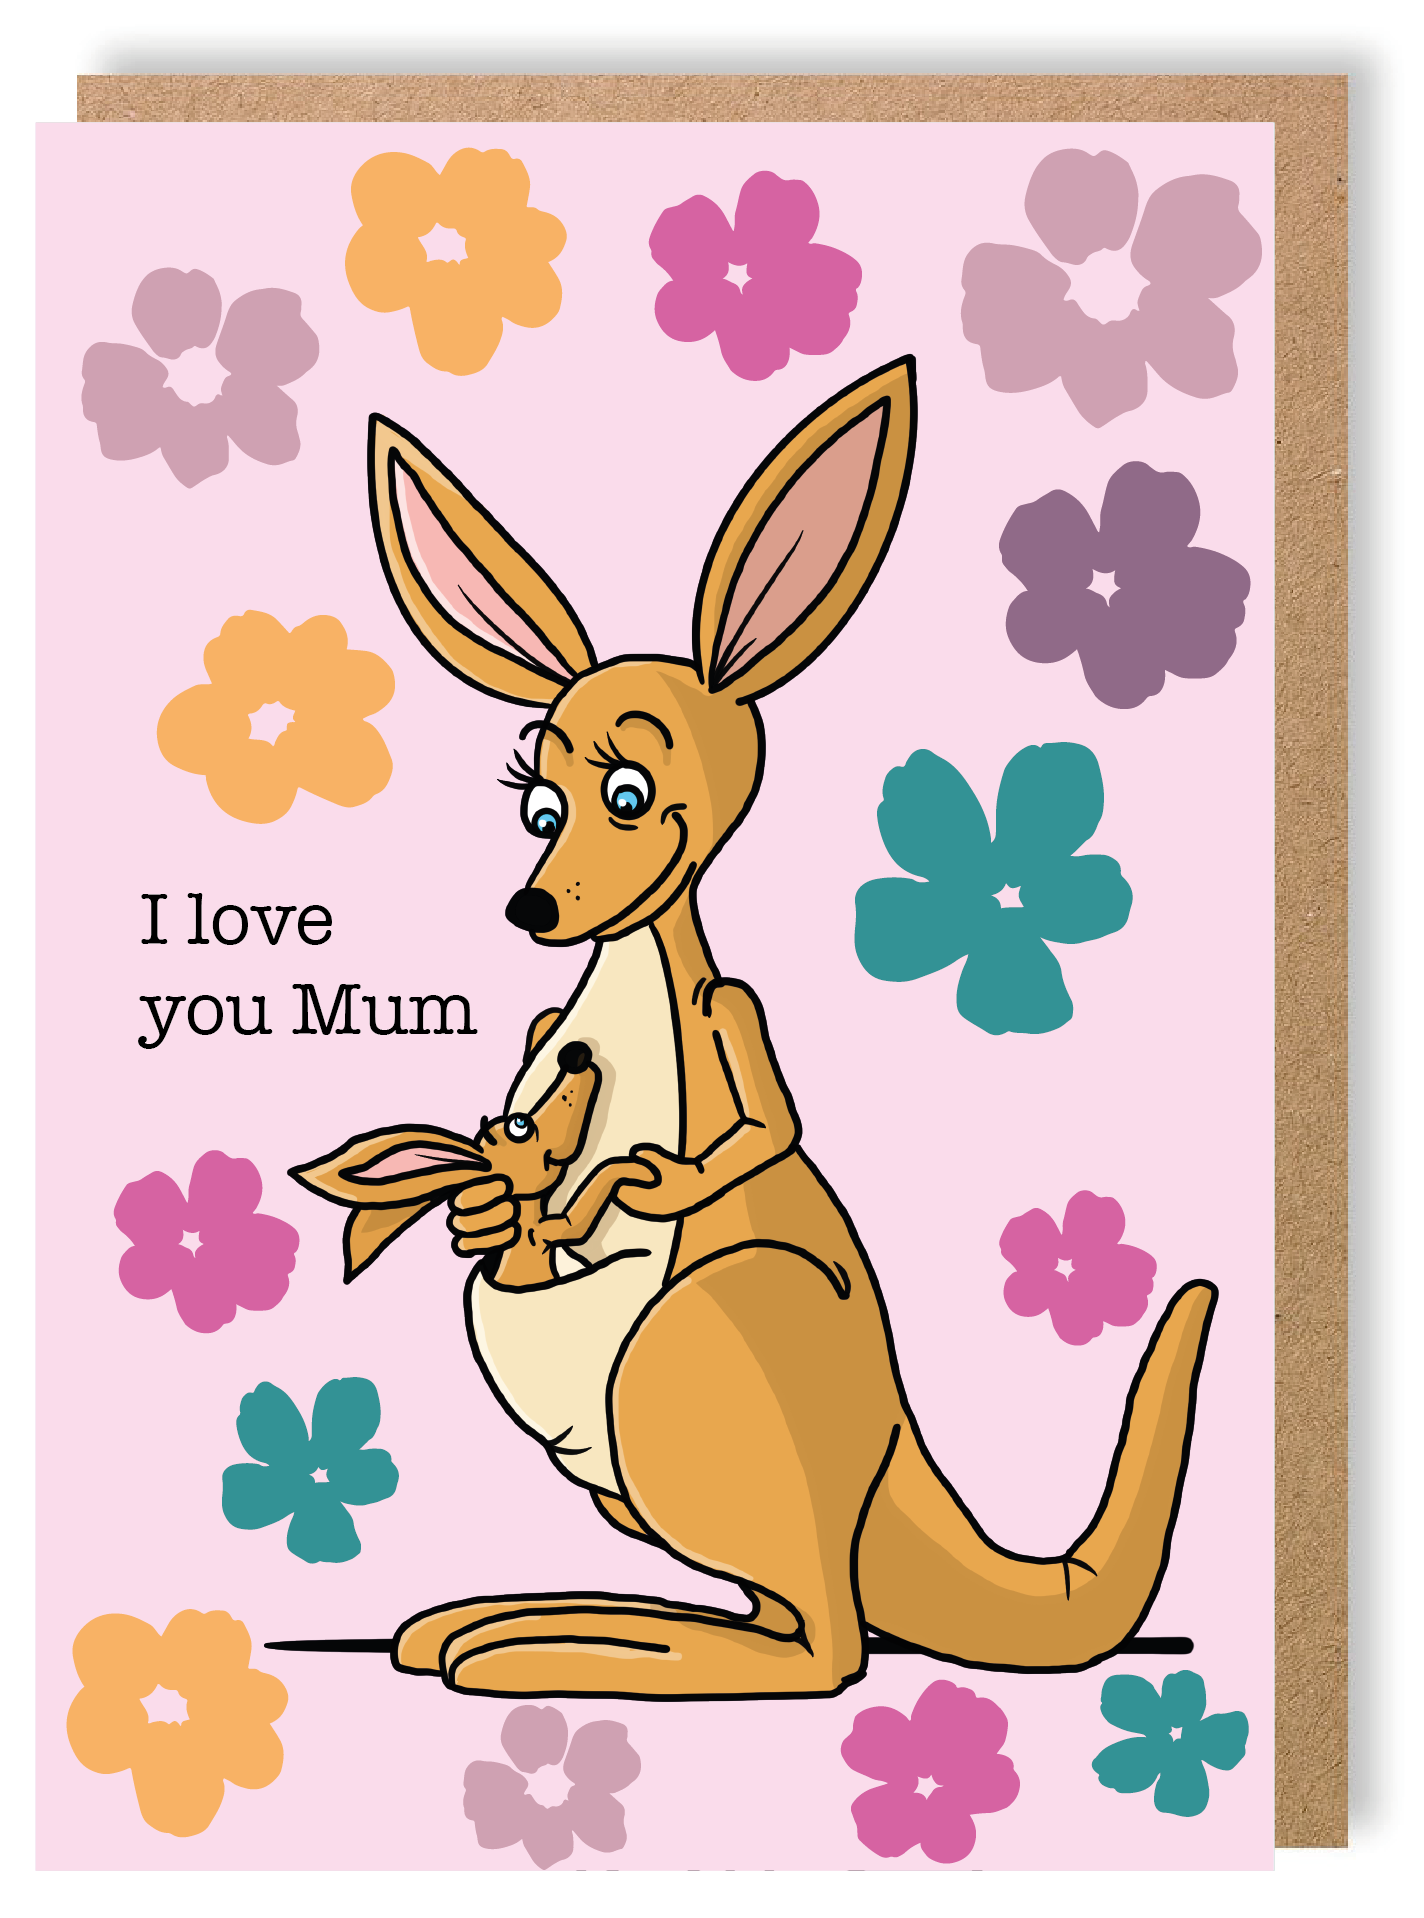 I Love You Mum - Kangaroo - Greetings Card - LukeHorton Art